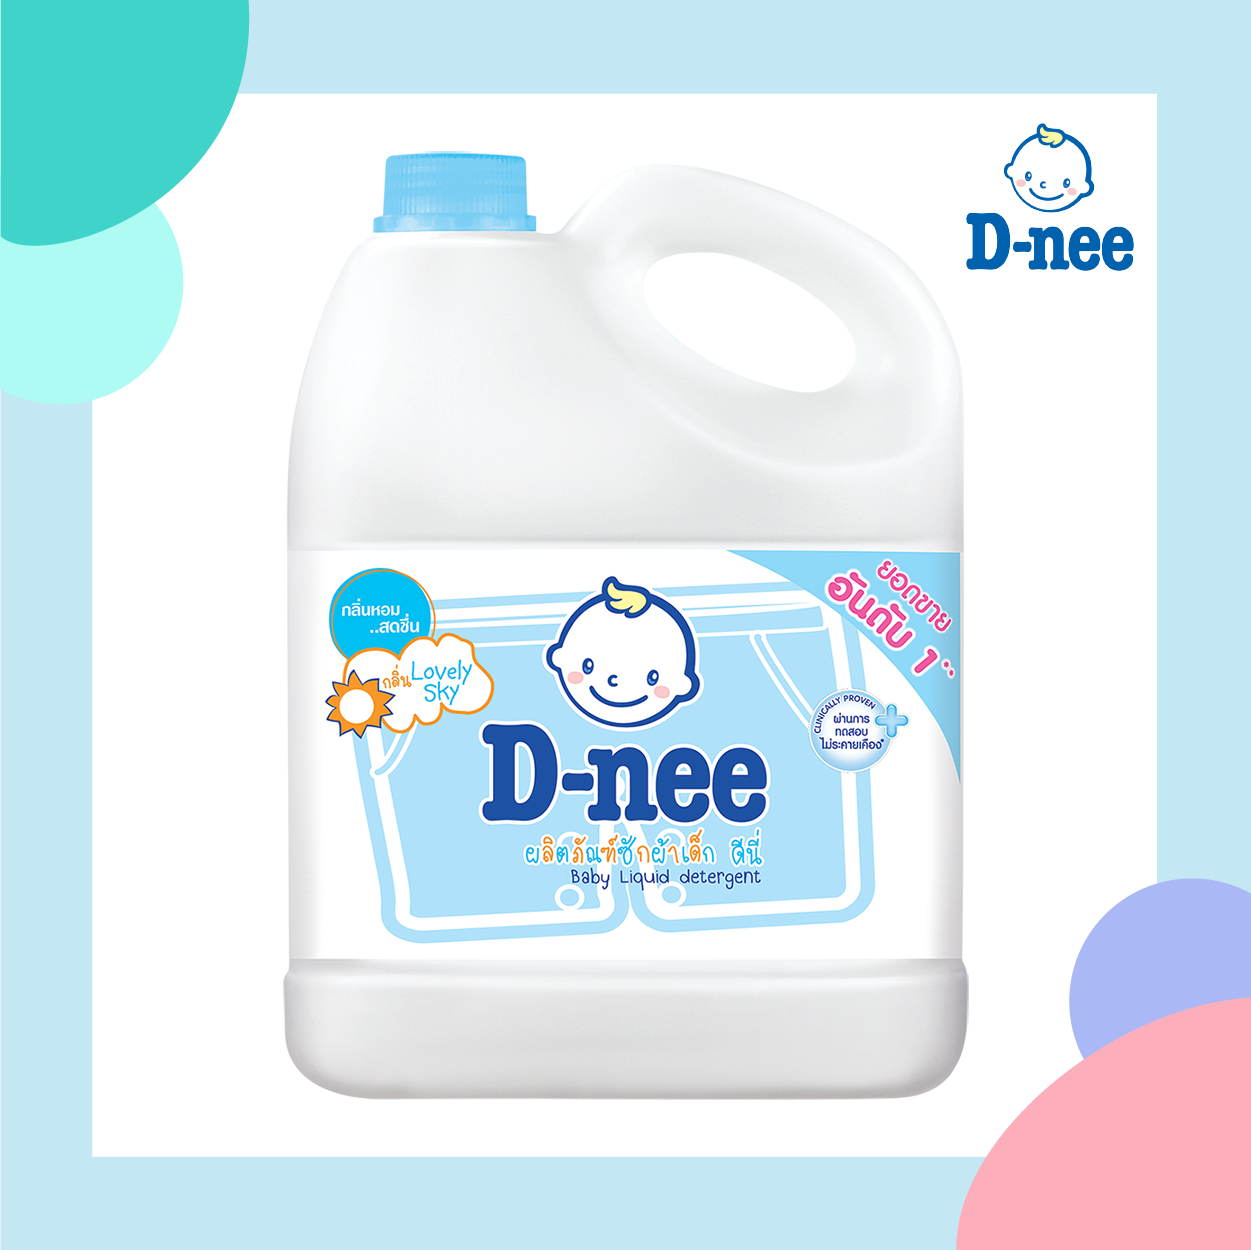 D-NEE น้ำยาซักผ้า เด็ก กลิ่น Lovely Sky (ชนิดแกลลอน) 3000 ml. สีฟ้า